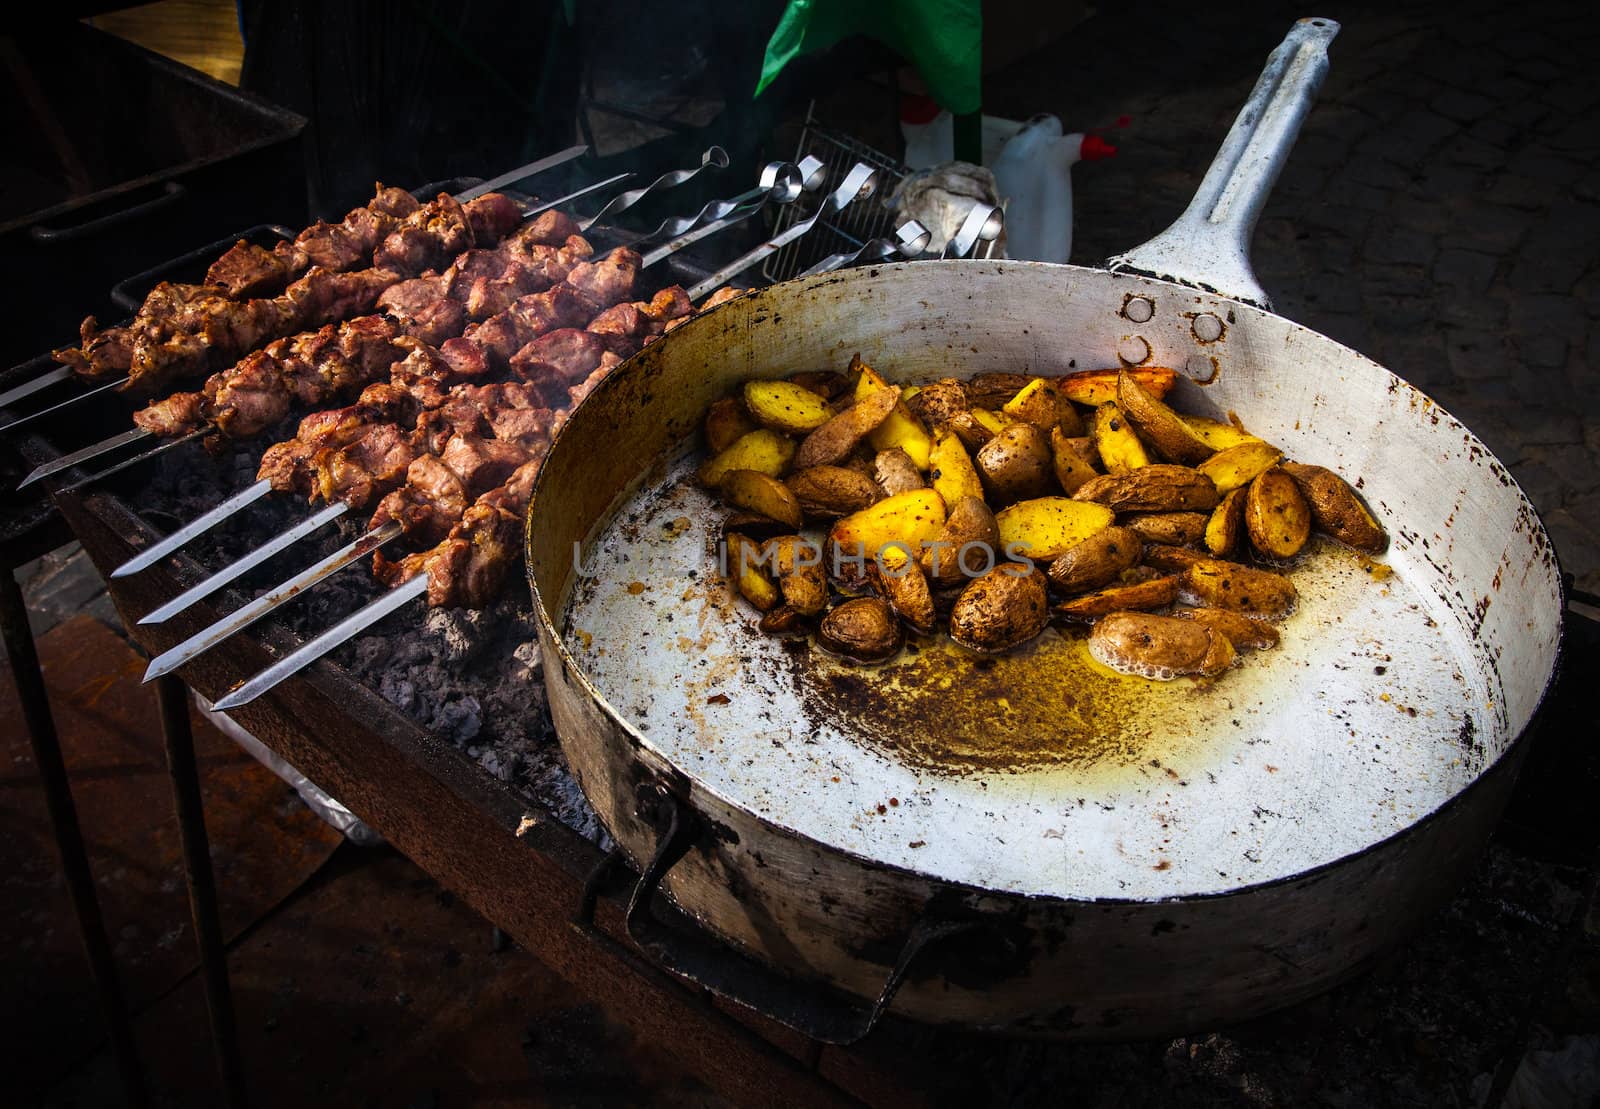 Kebab and roasted potatoes by palinchak